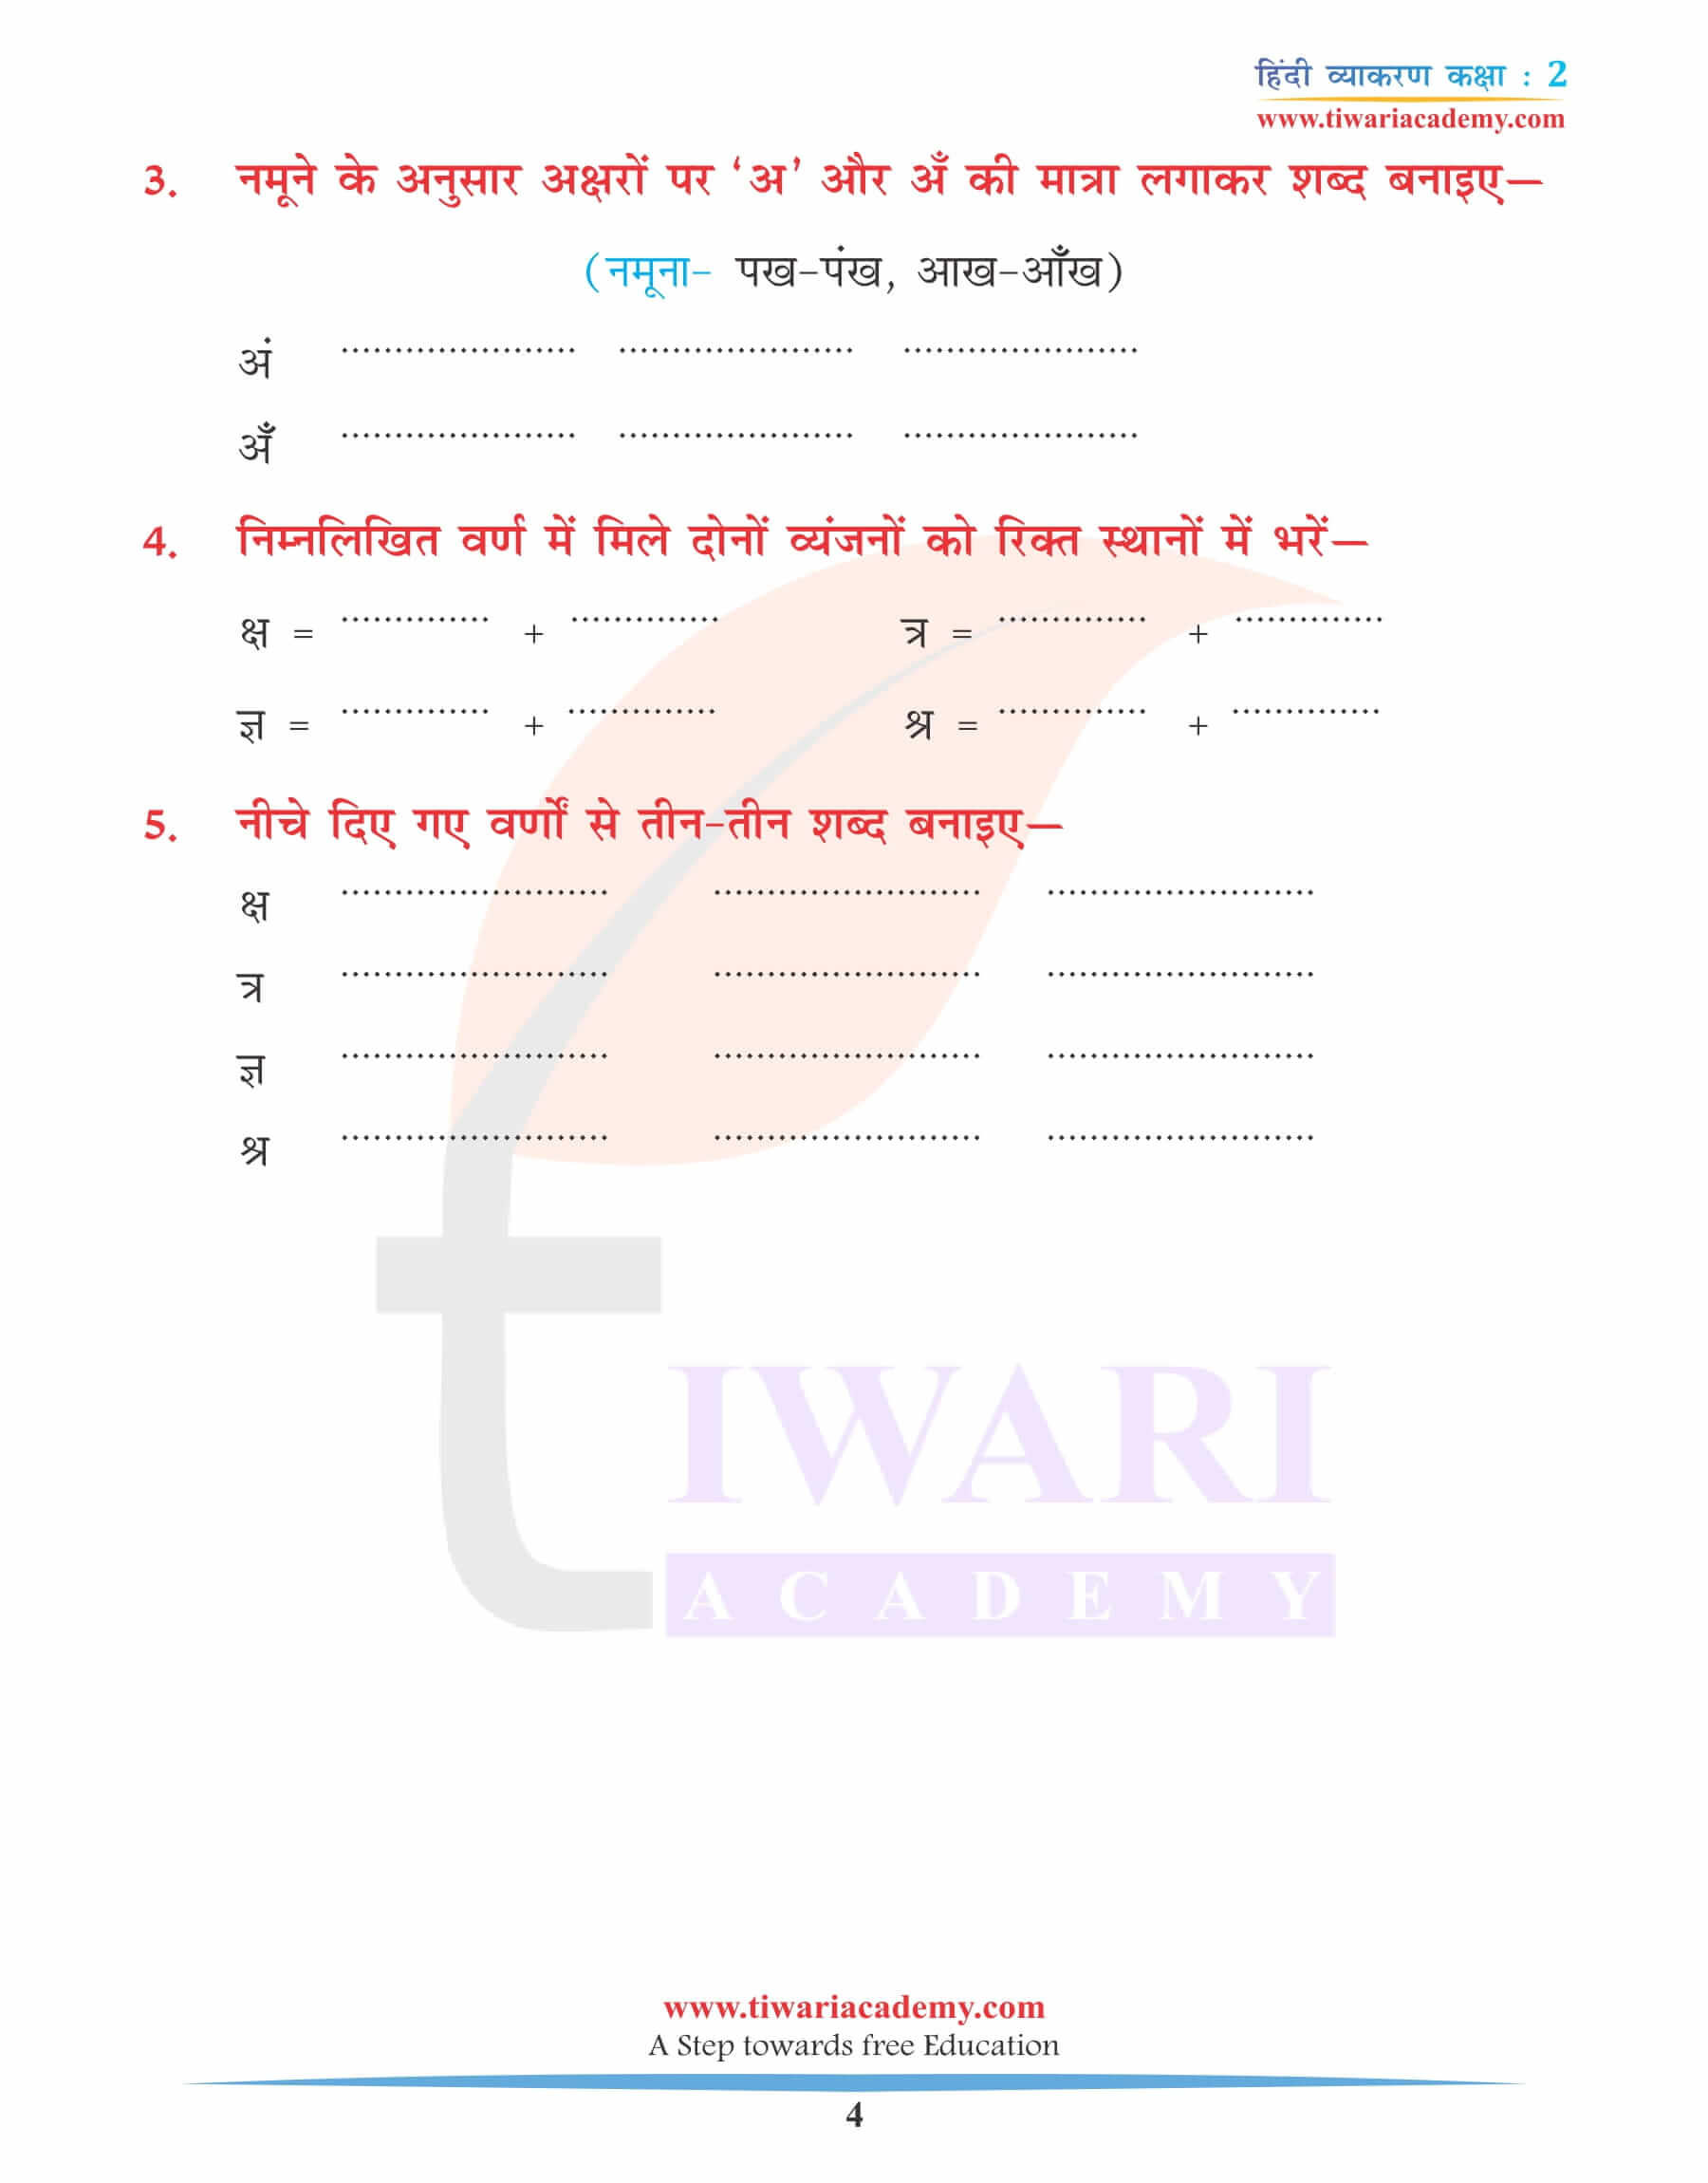 कक्षा 2 के लिए हिंदी व्याकरण अध्याय 1